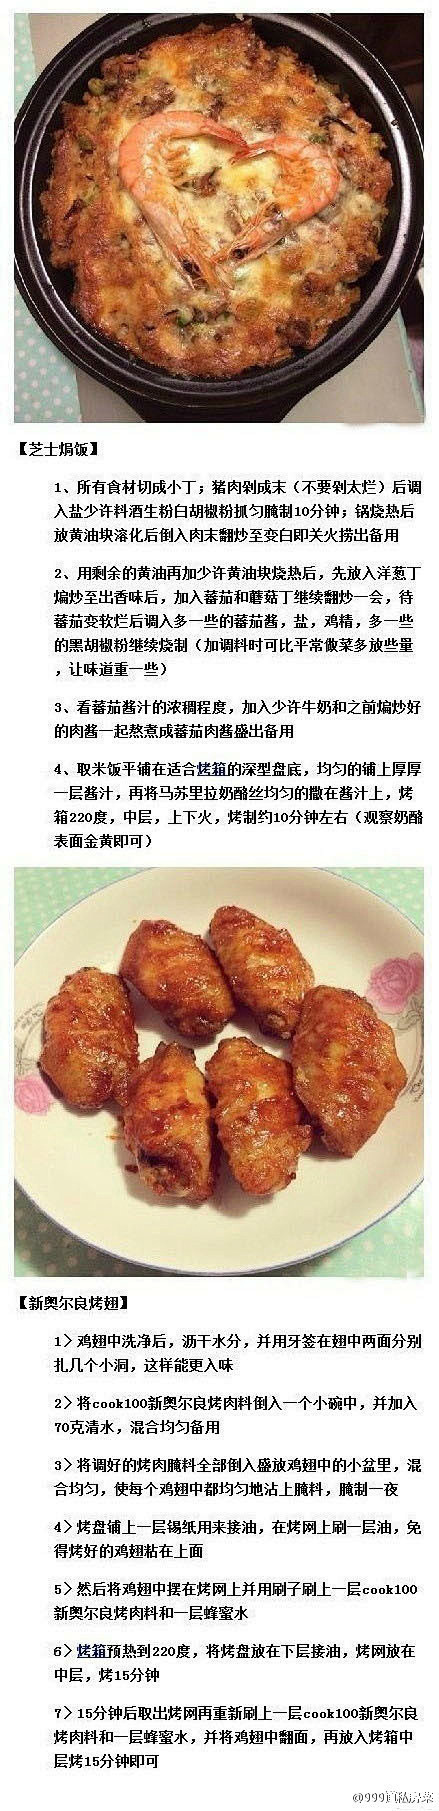 【芝士焗饭+新奥尔良烤鸡翅】#食谱#(〃...